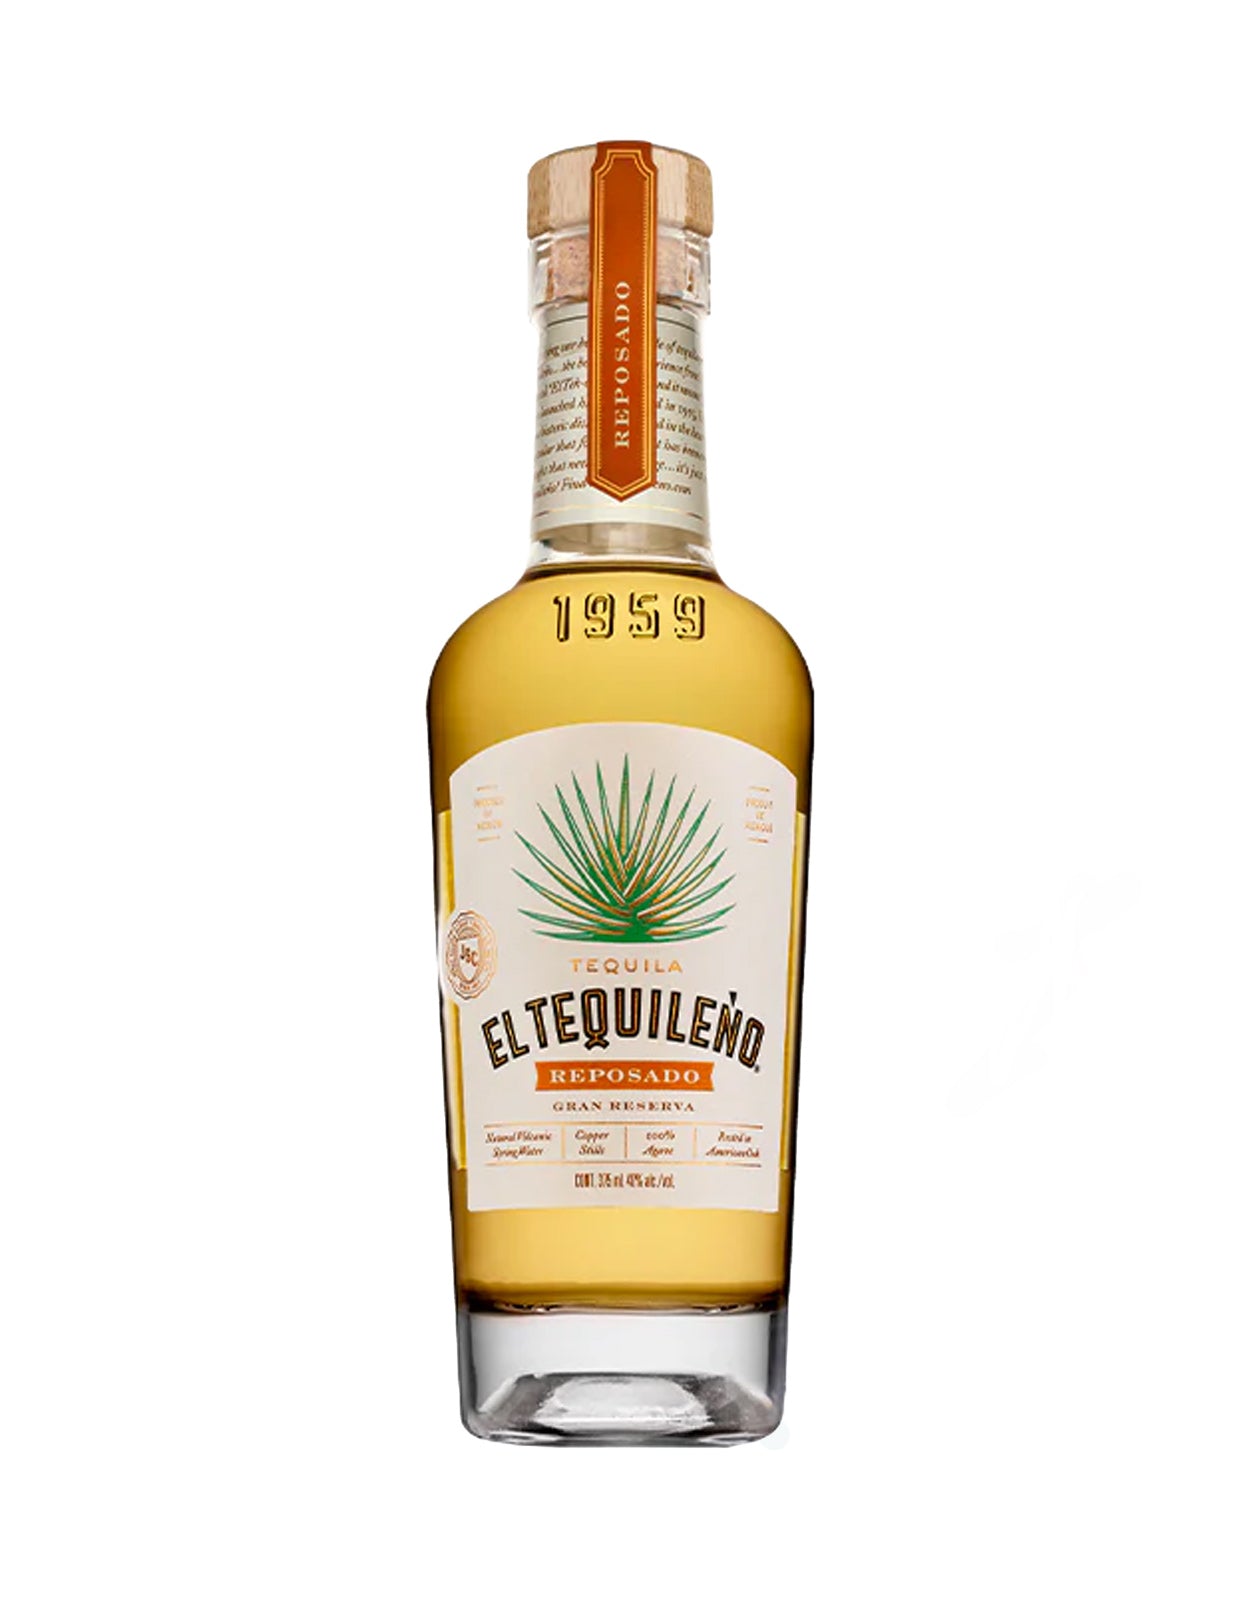 El Tequileno Reposado Gran Reserva Tequila - 375 ml